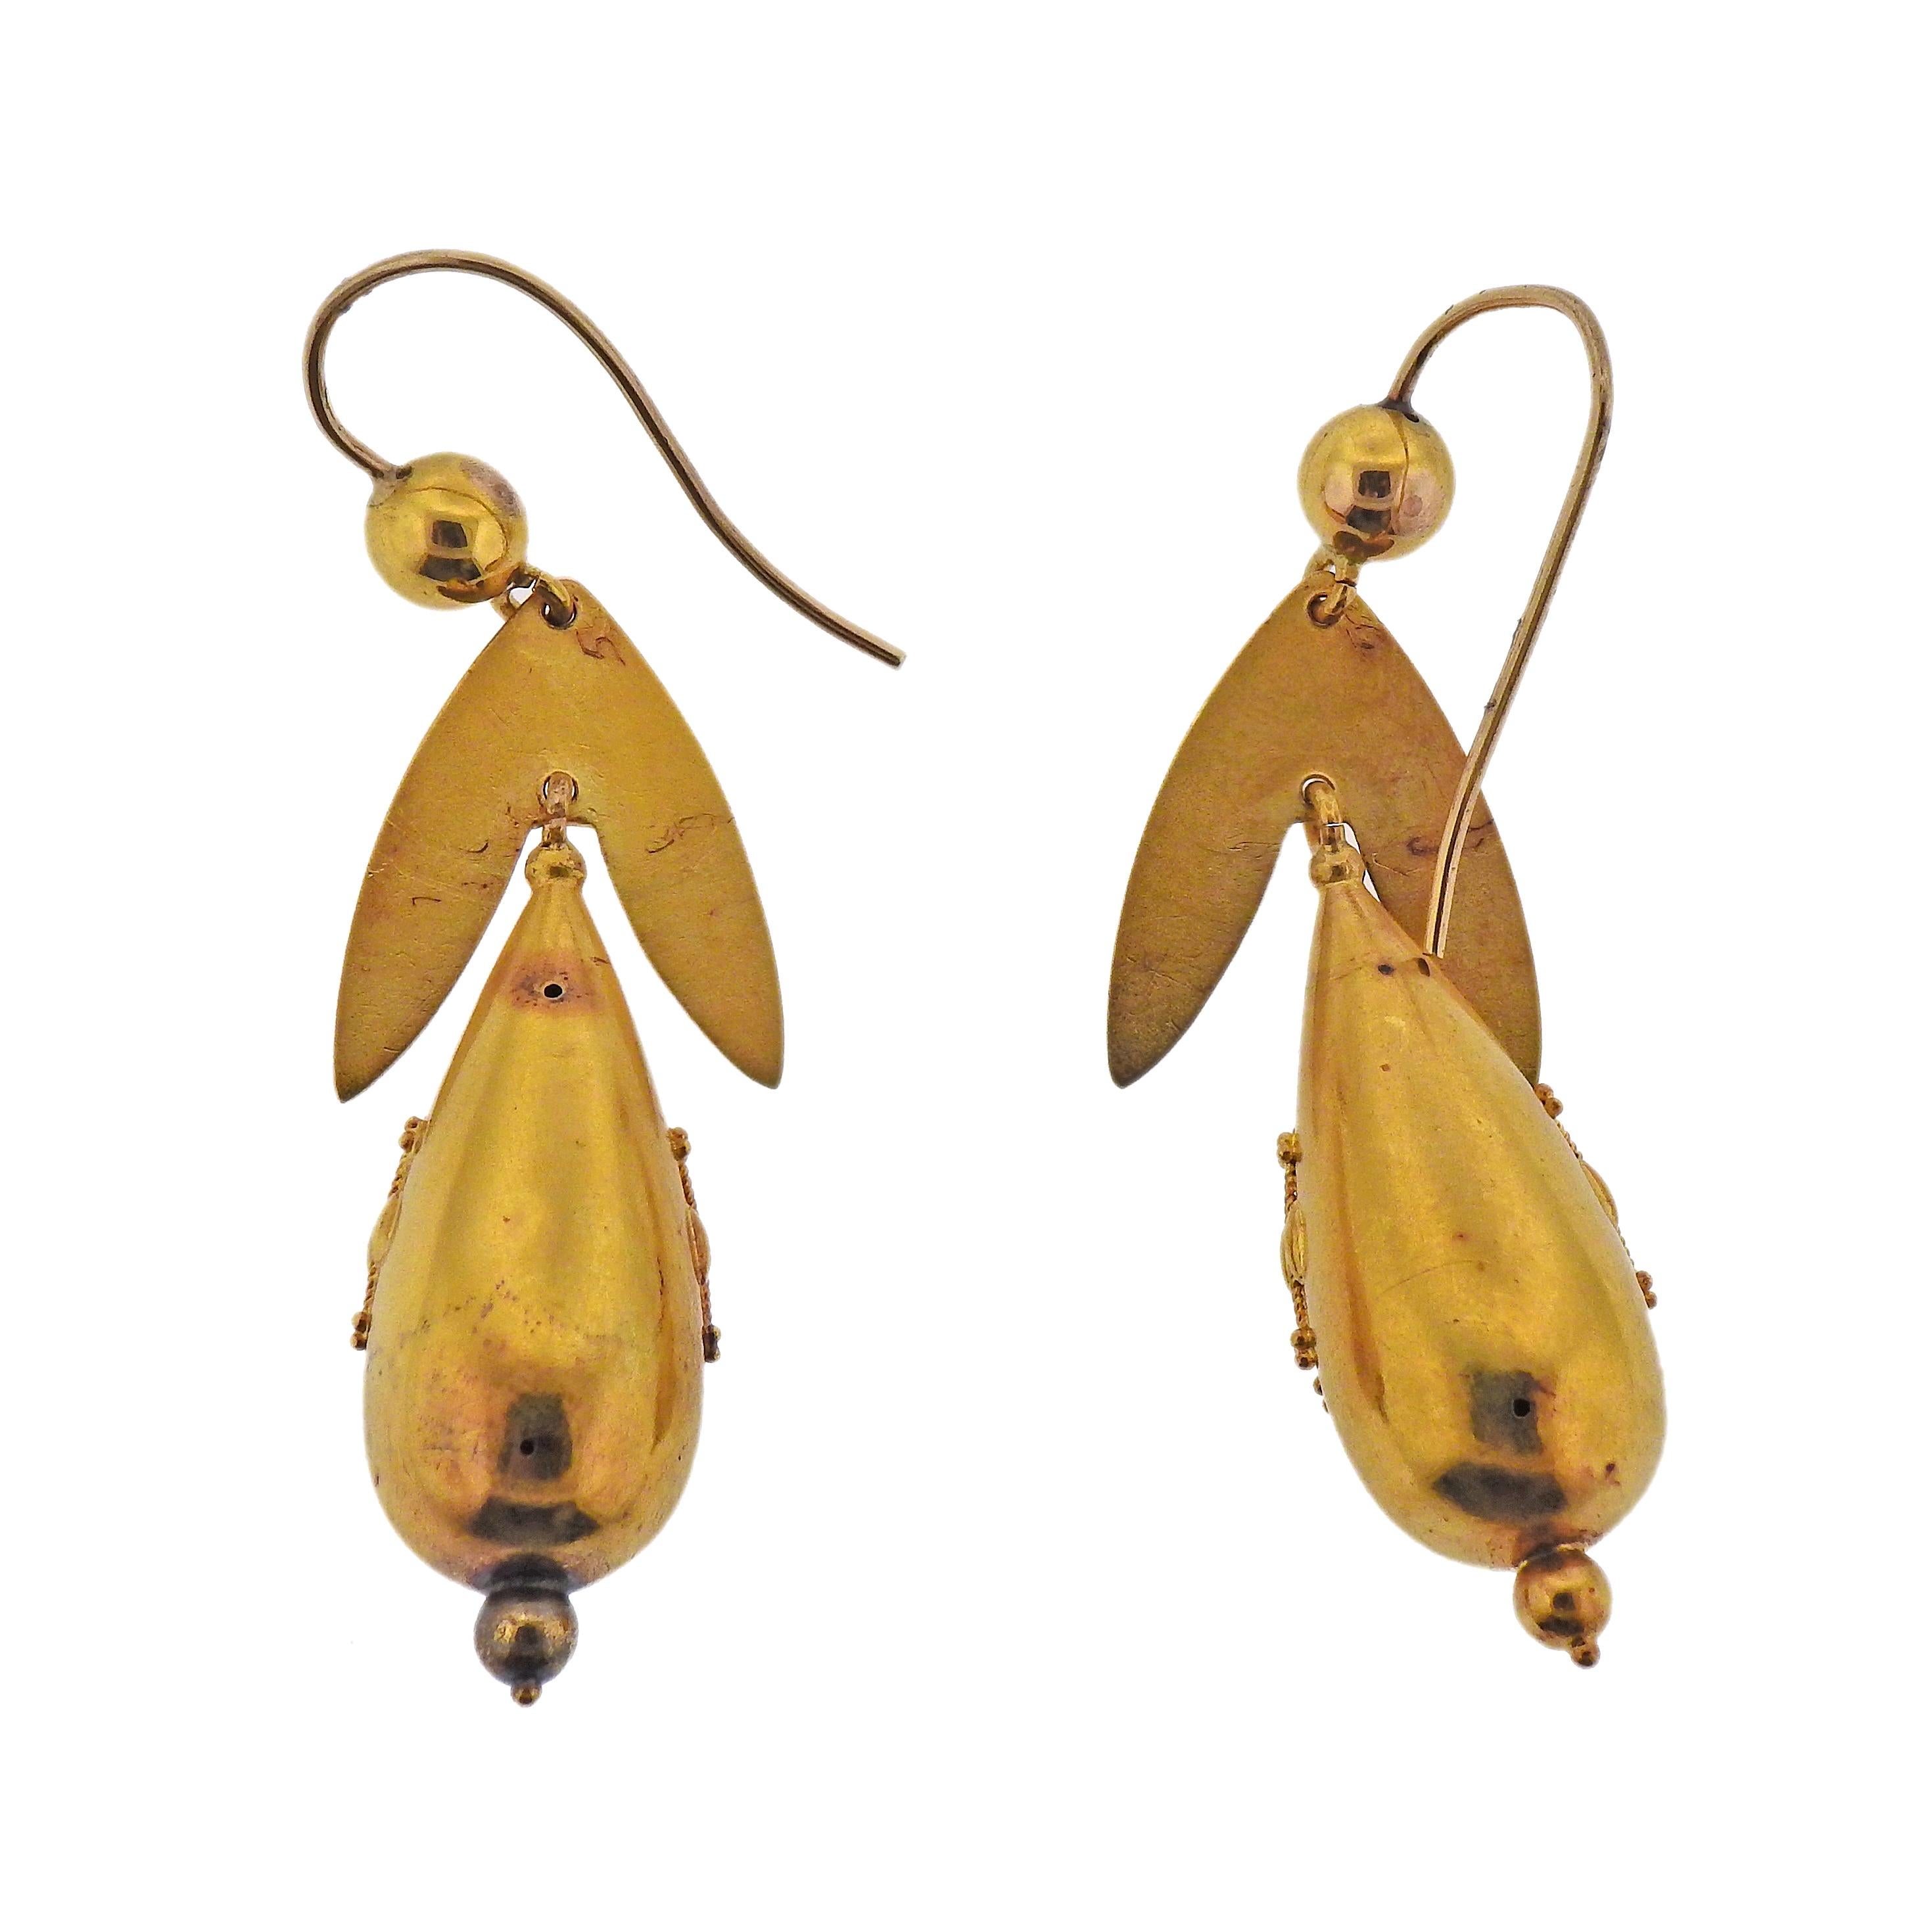 Pair of 15k yellow gold drop earrings by Castellani. Earrings measure 2